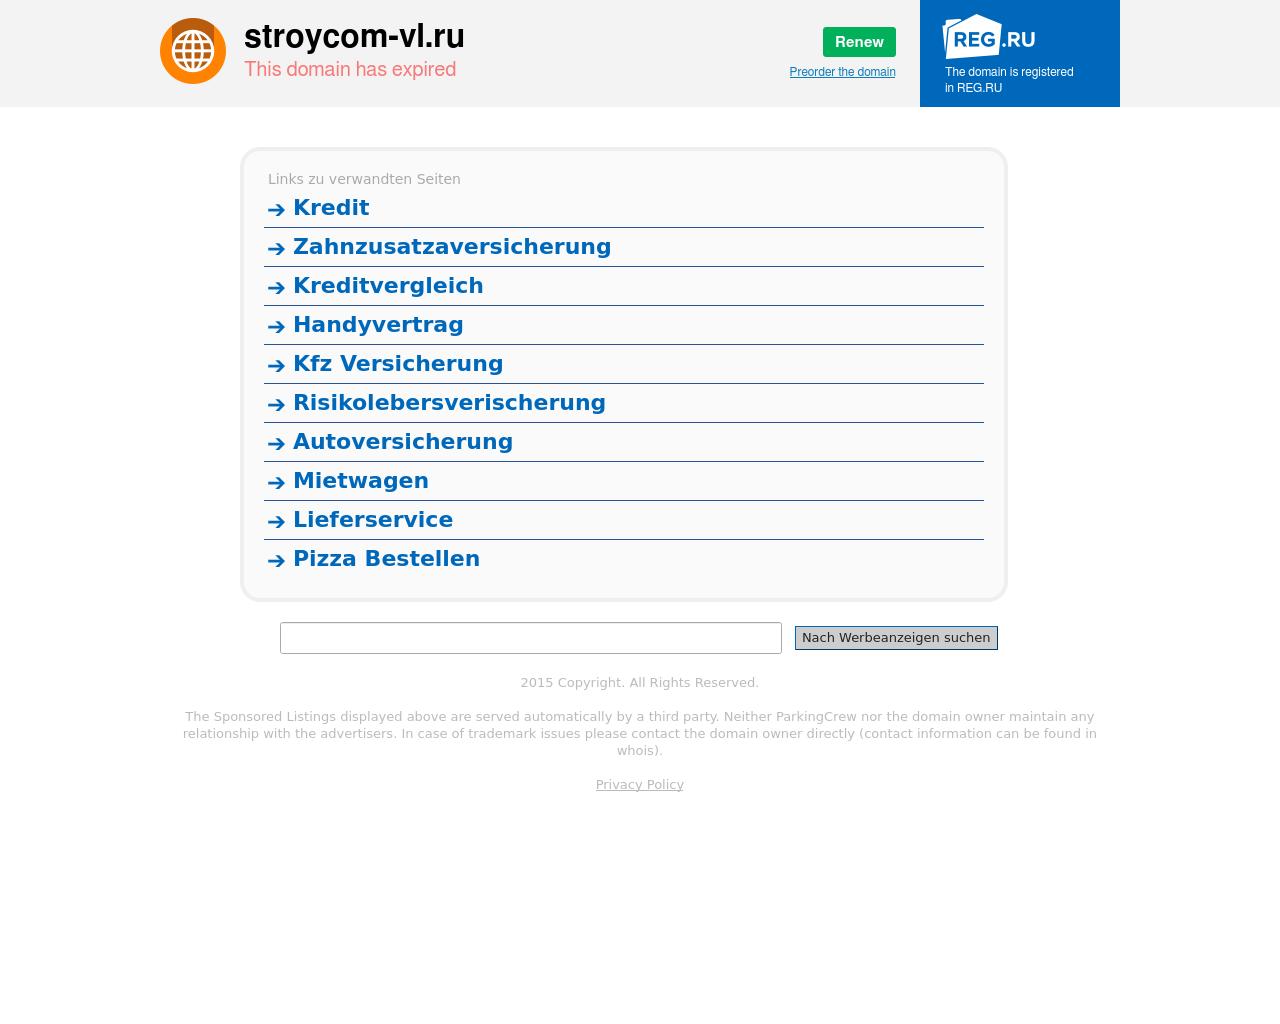 Изображение сайта stroycom-vl.ru в разрешении 1280x1024